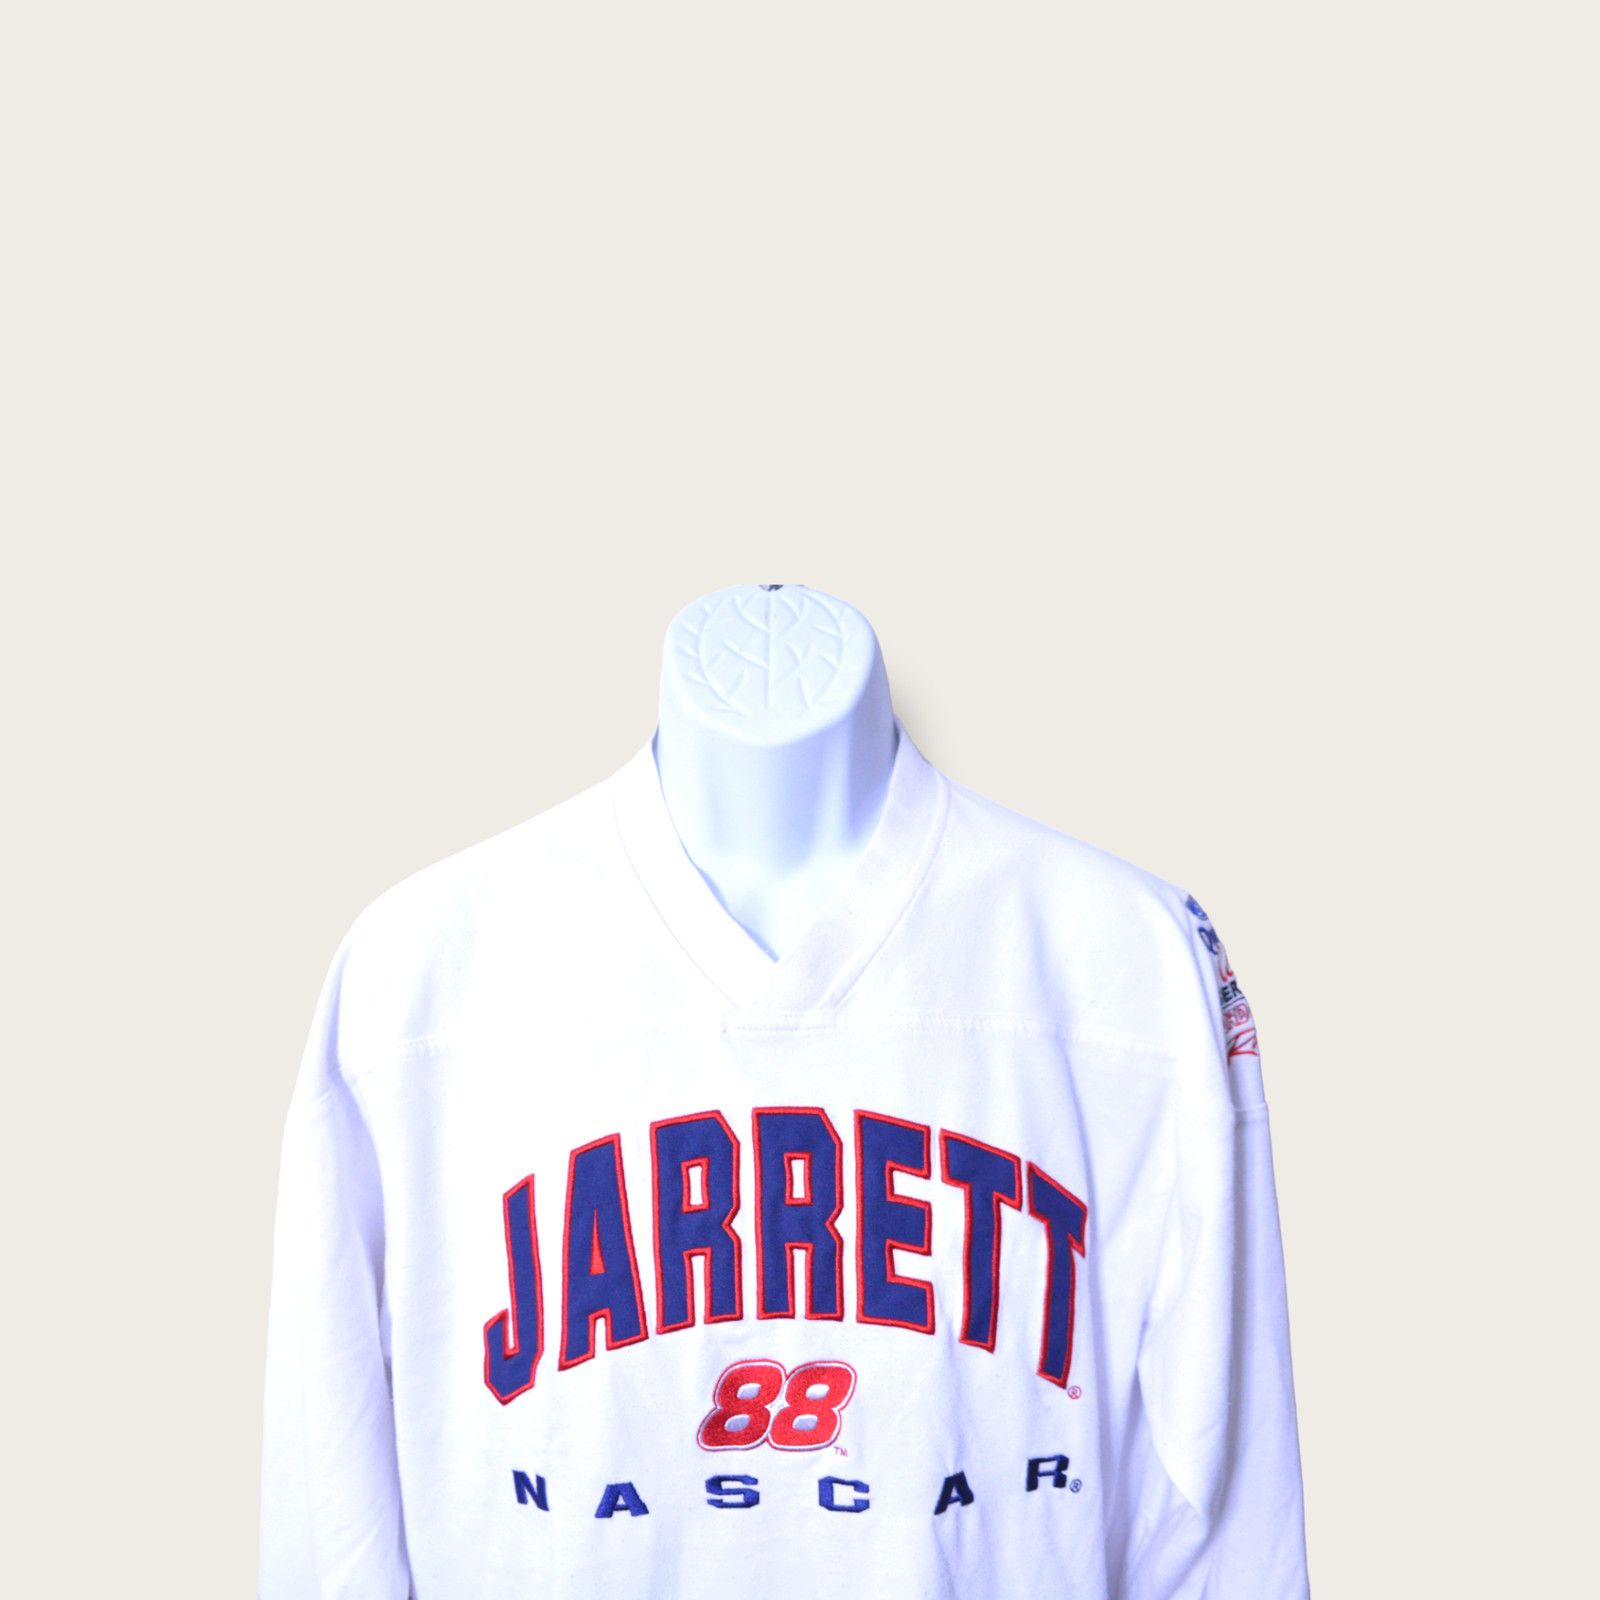 Chase Authentics Vintage Dale Jarrett NASCAR t-shirt Medium Size US M / EU 48-50 / 2 - 6 Preview